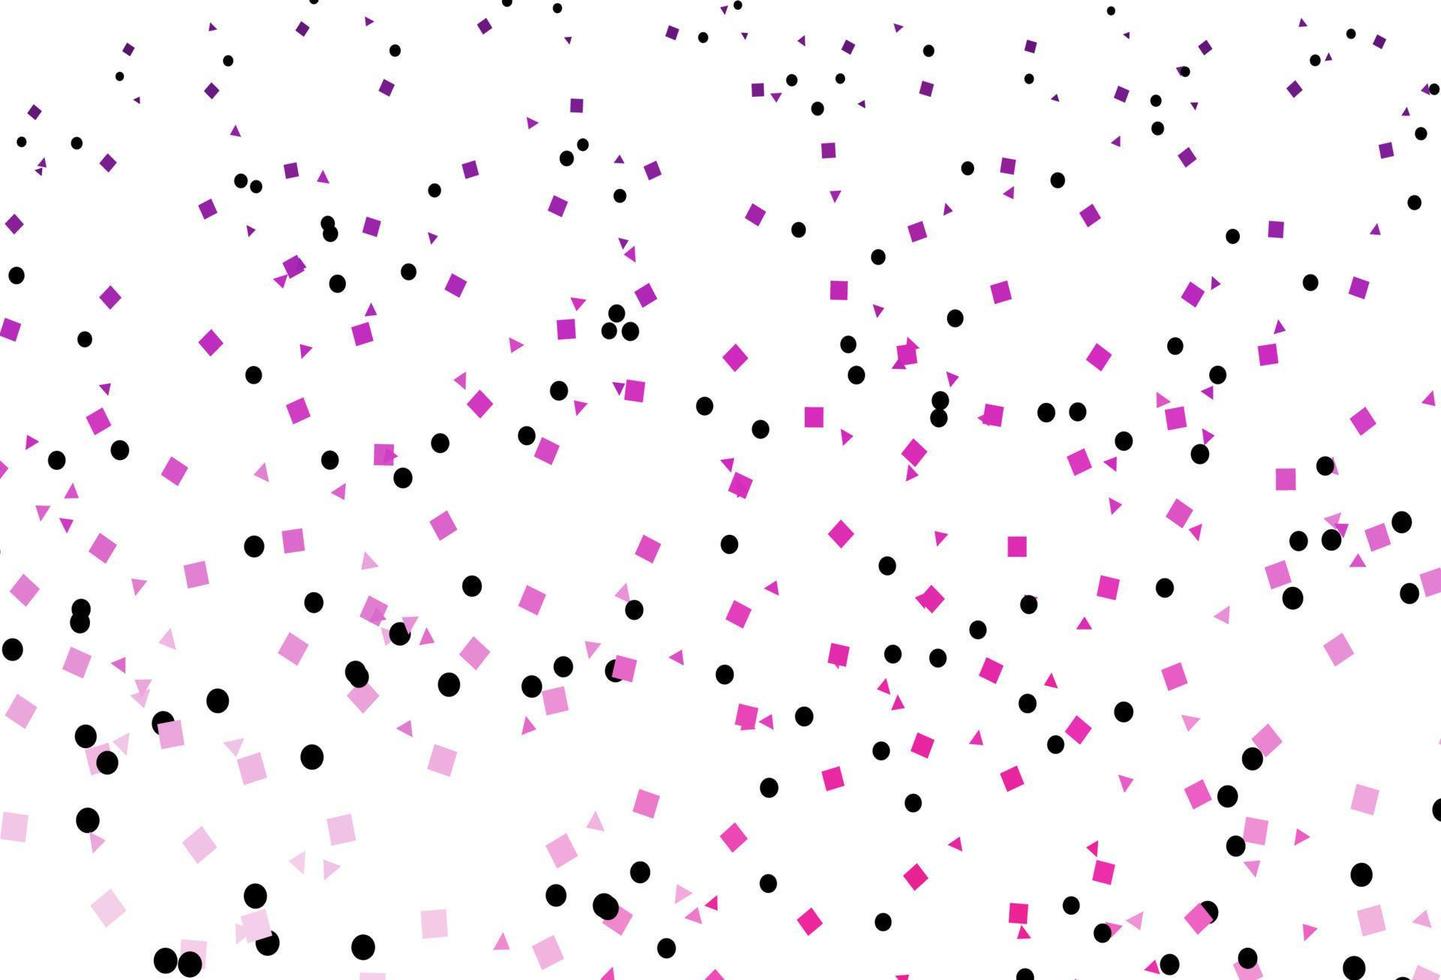 diseño de vector rosa claro con círculos, líneas, rectángulos.